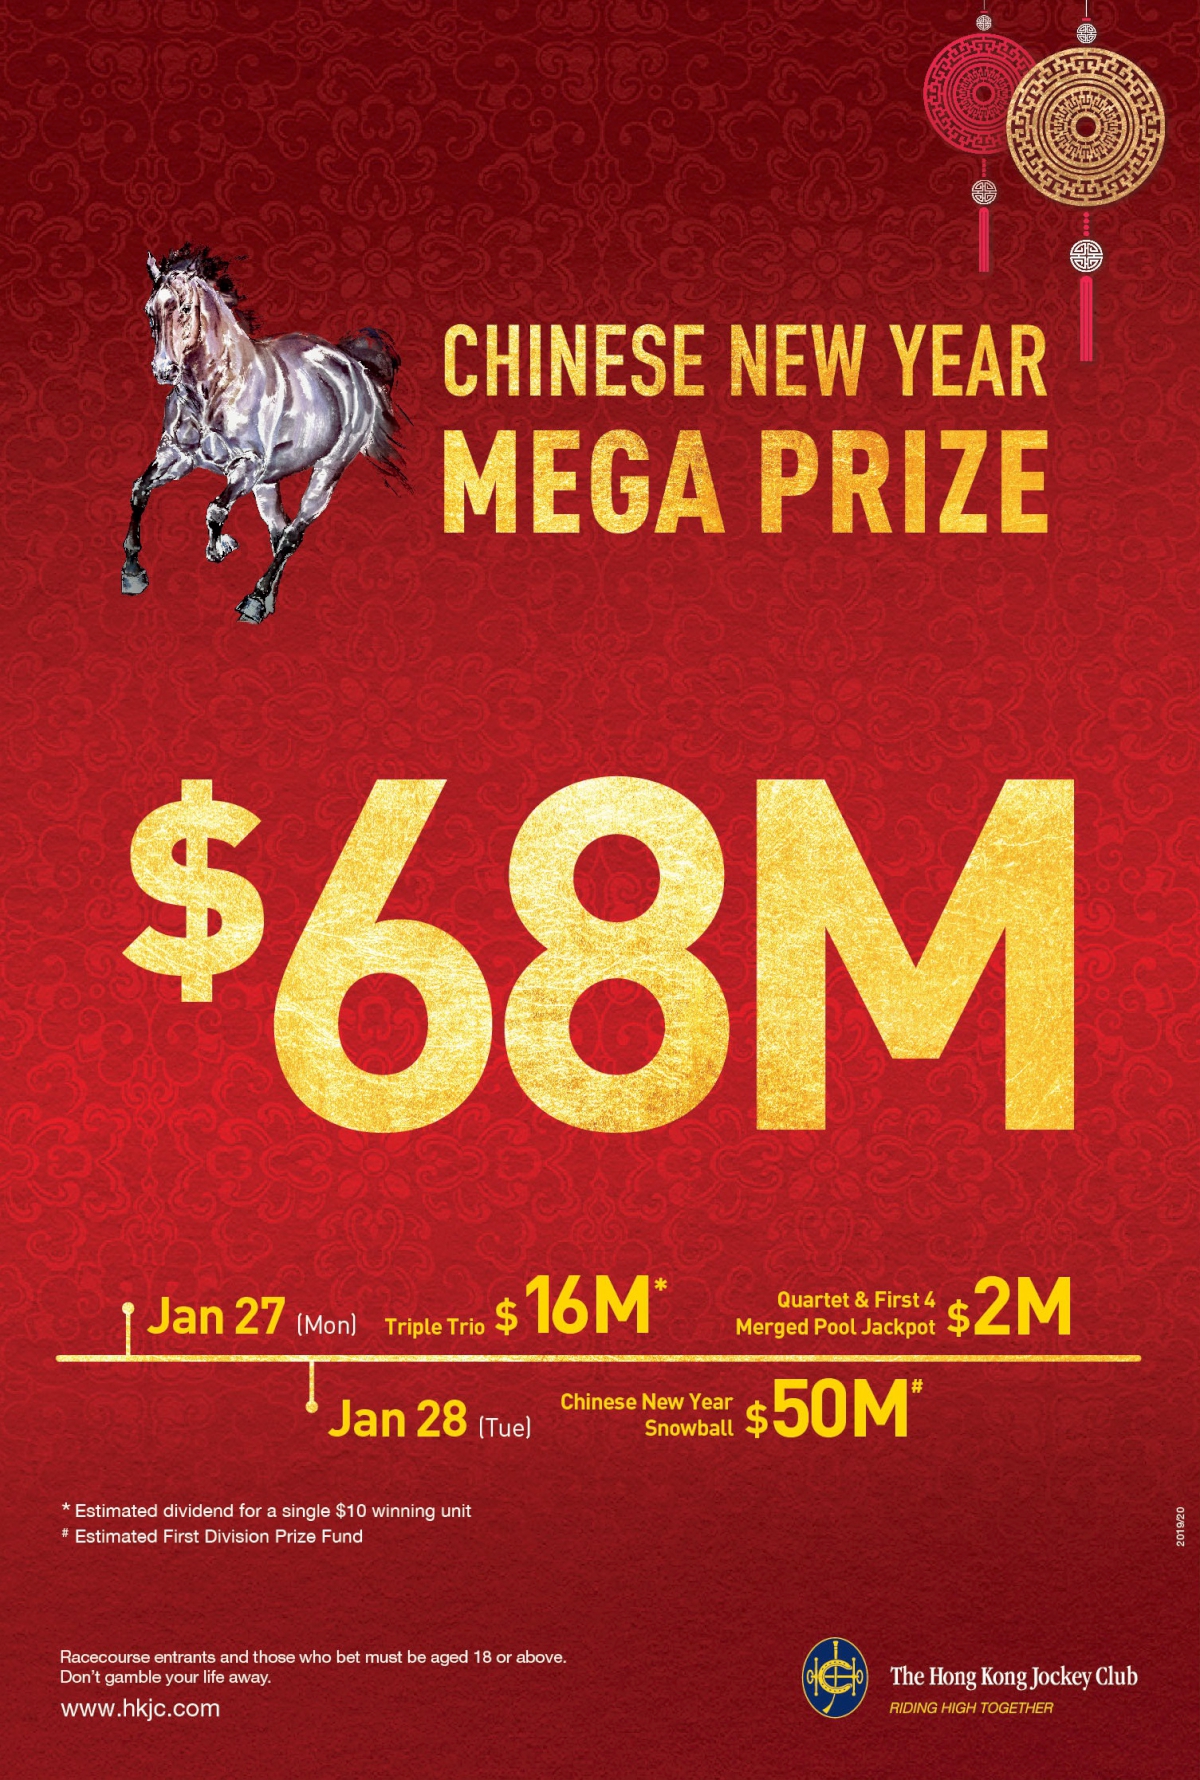 $68 million mega prize